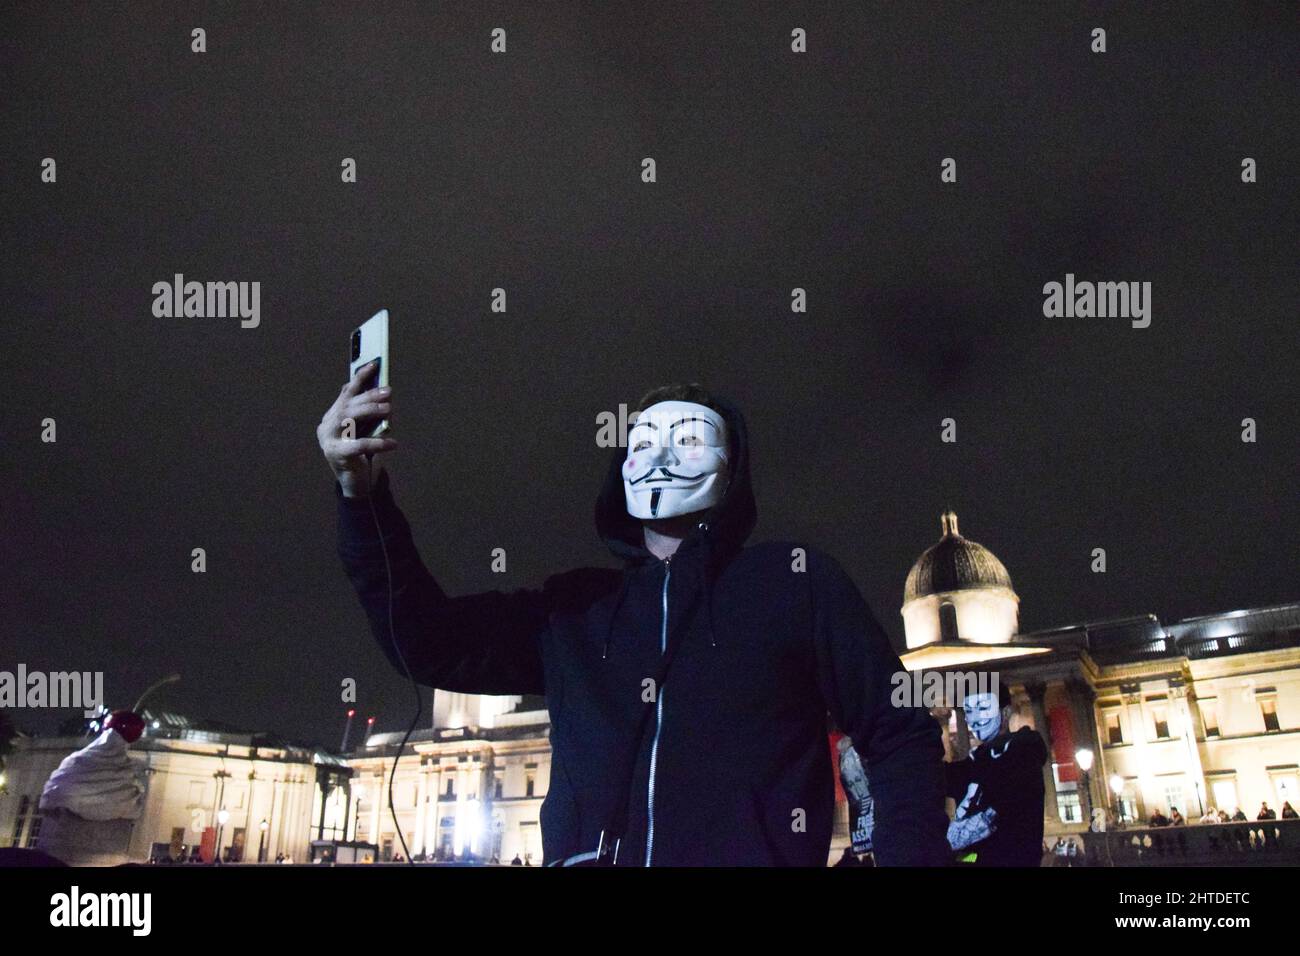 Un manifestante che indossa una maschera Guy Fawkes al Million Mask March organizzato dal gruppo hacktivist Anonymous a Trafalgar Square. Londra, Regno Unito 5th novembre 2021. Foto Stock